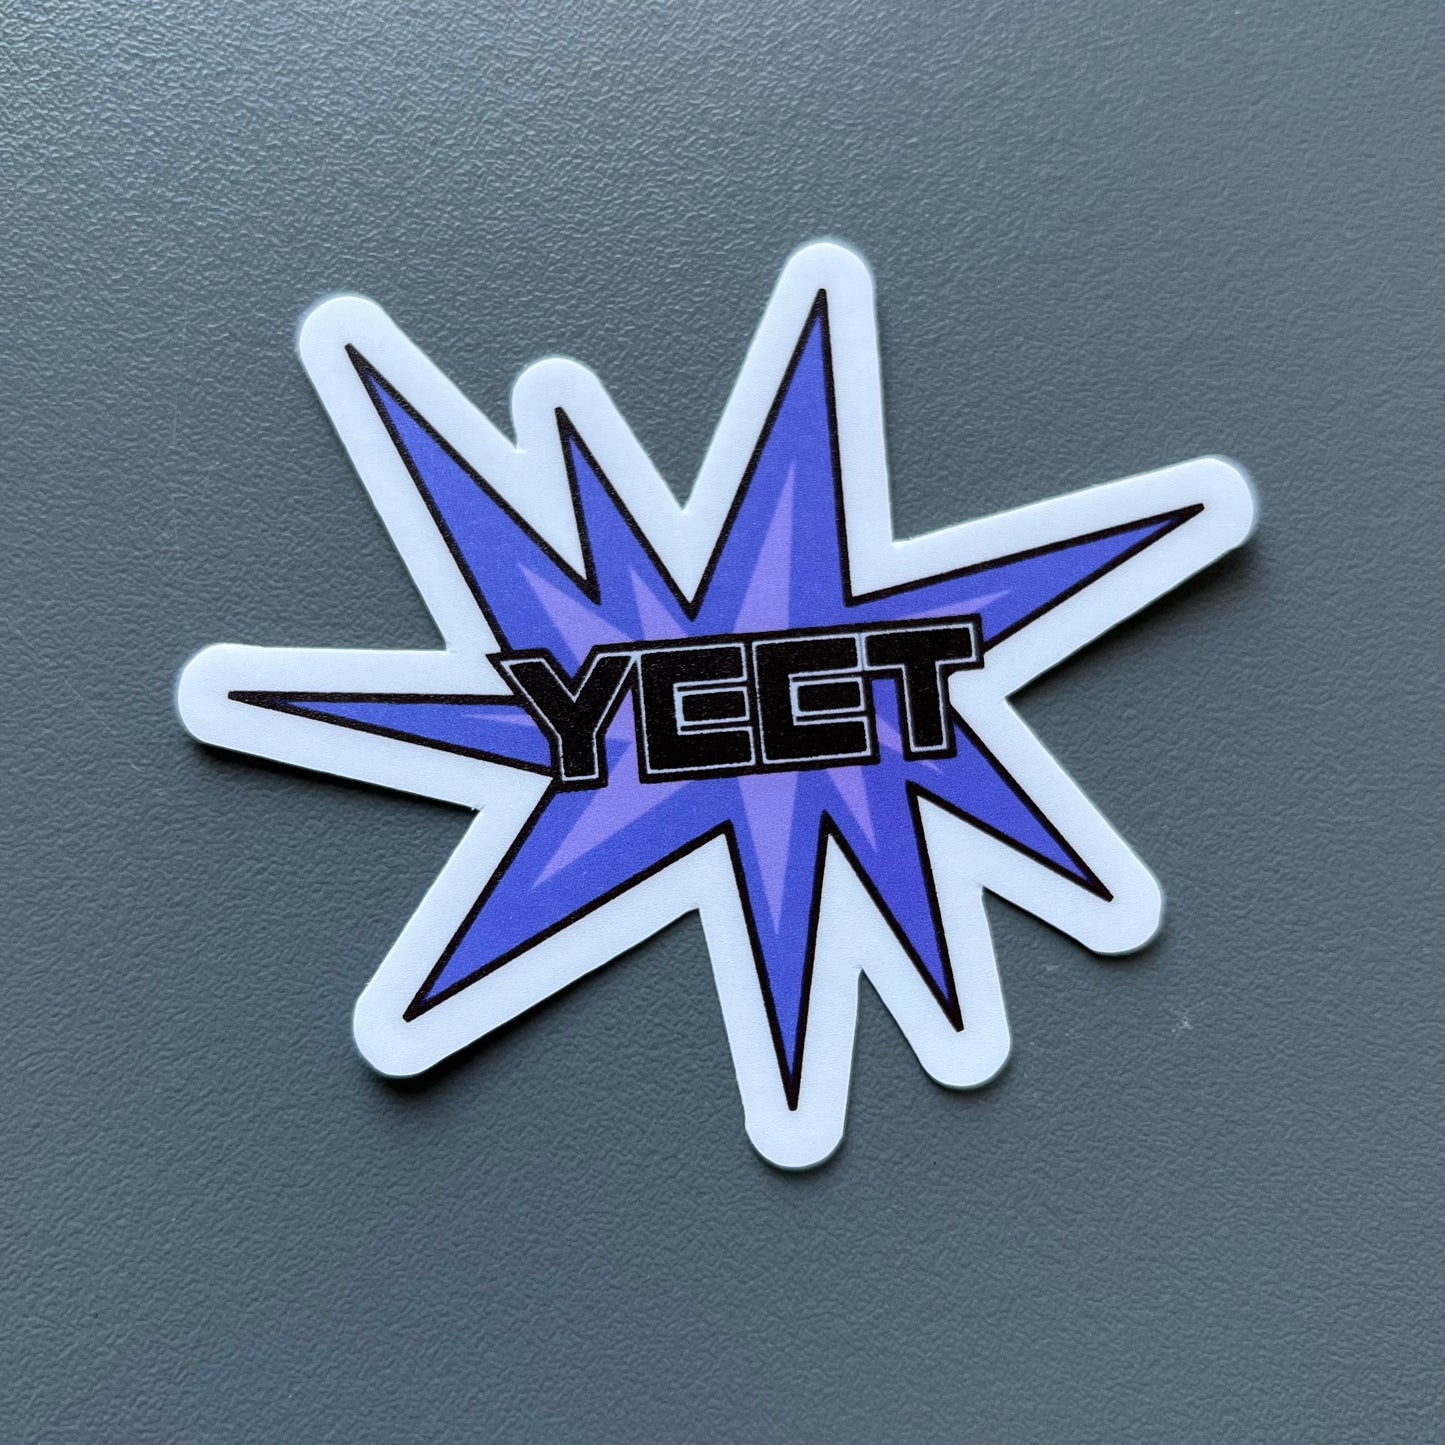 "YEET" Sticker